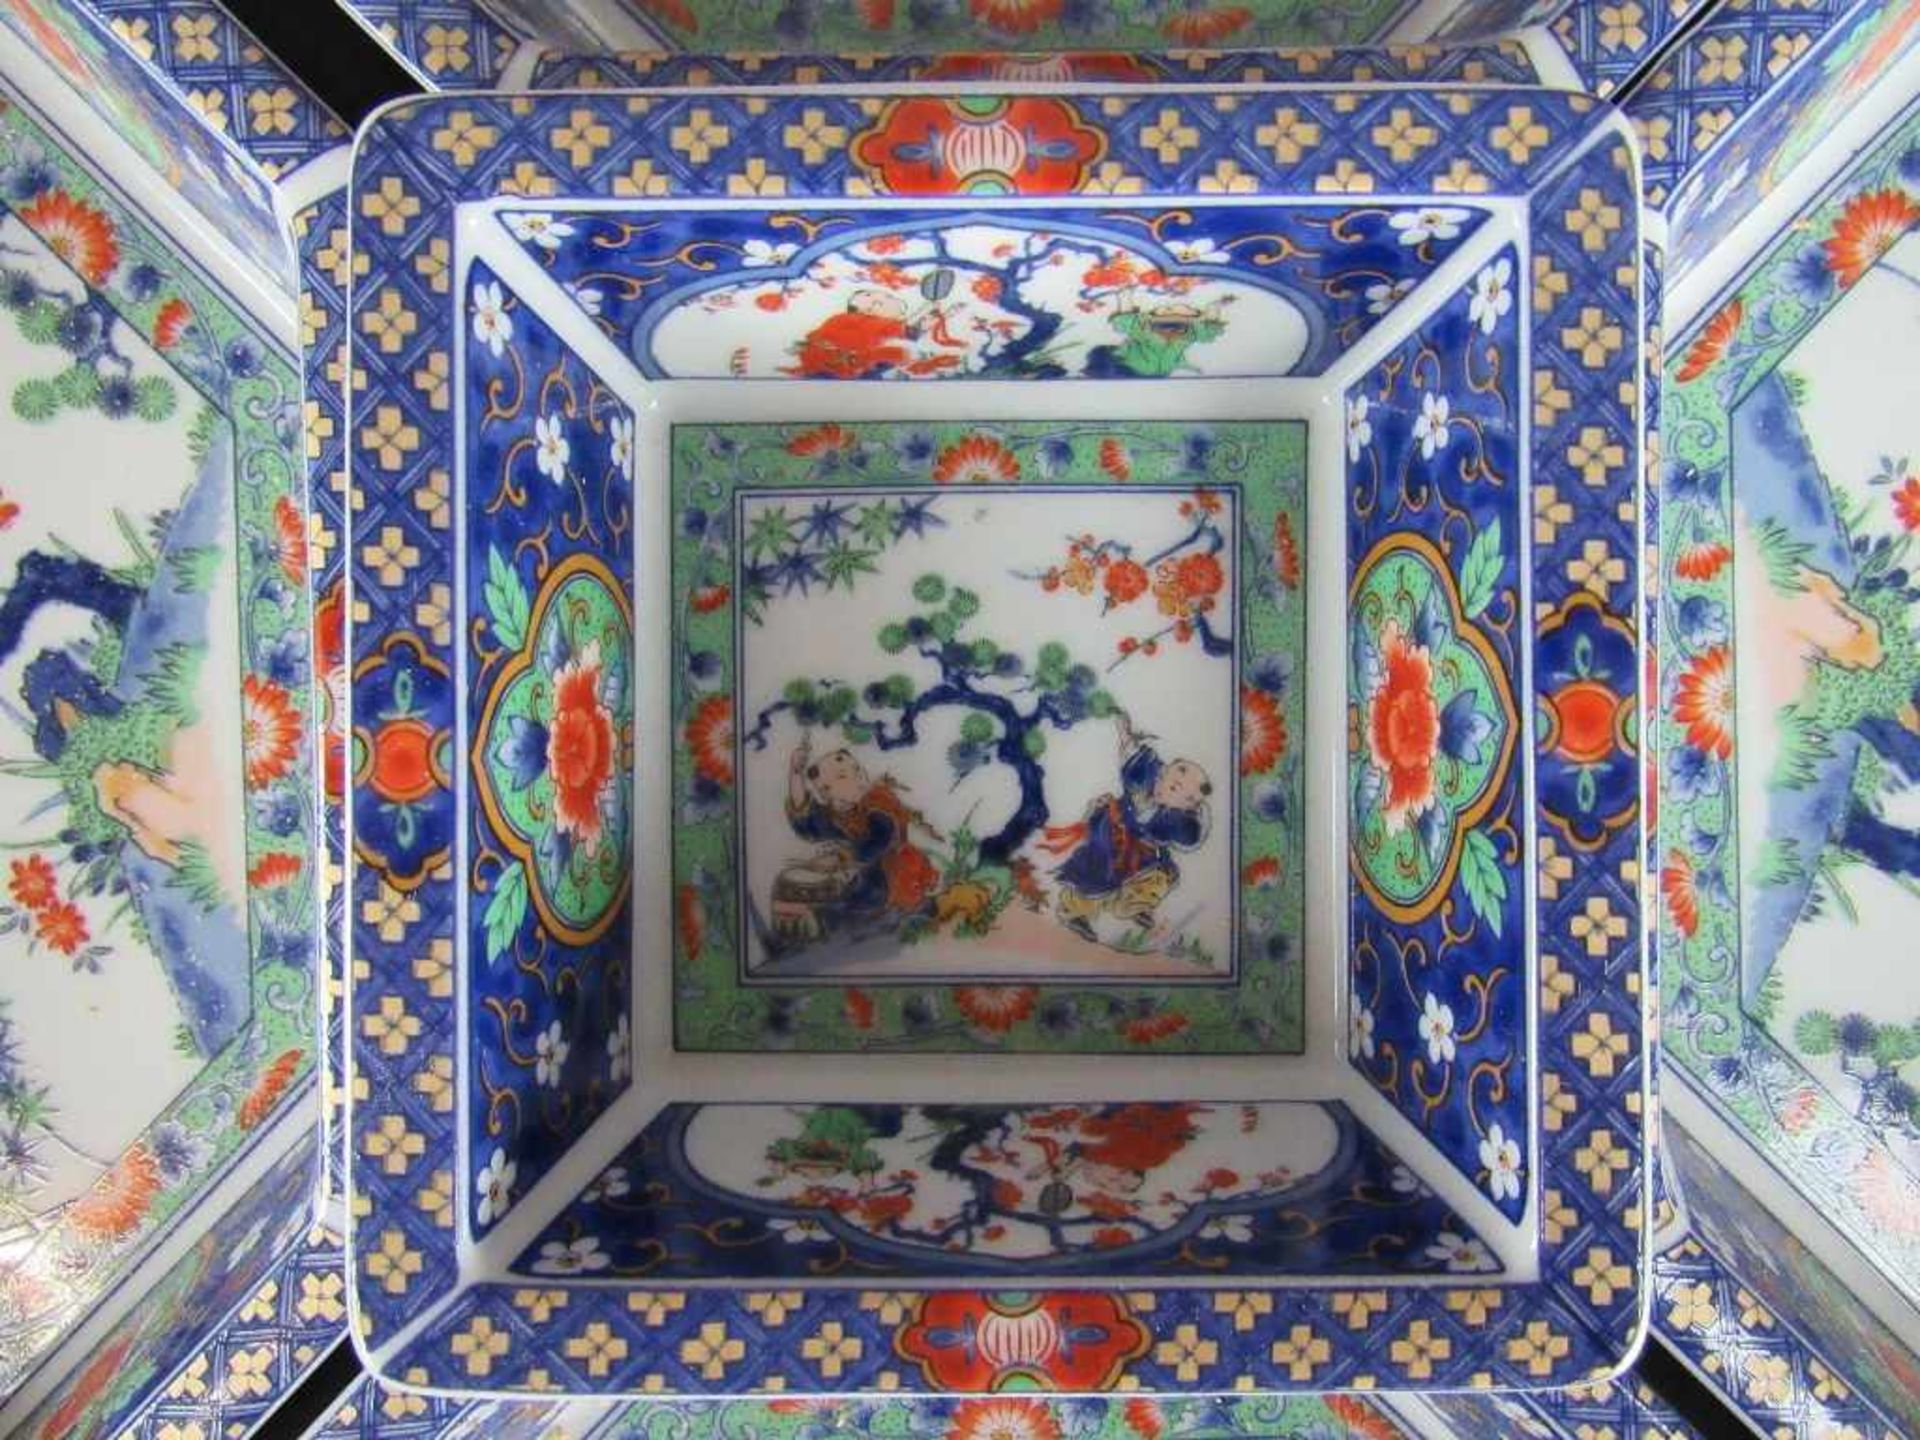 Chinesische Warmhalte bzw - Reismenagerie Schälchen in lasierter Keramik drehbare Holzschatulle - Image 3 of 5